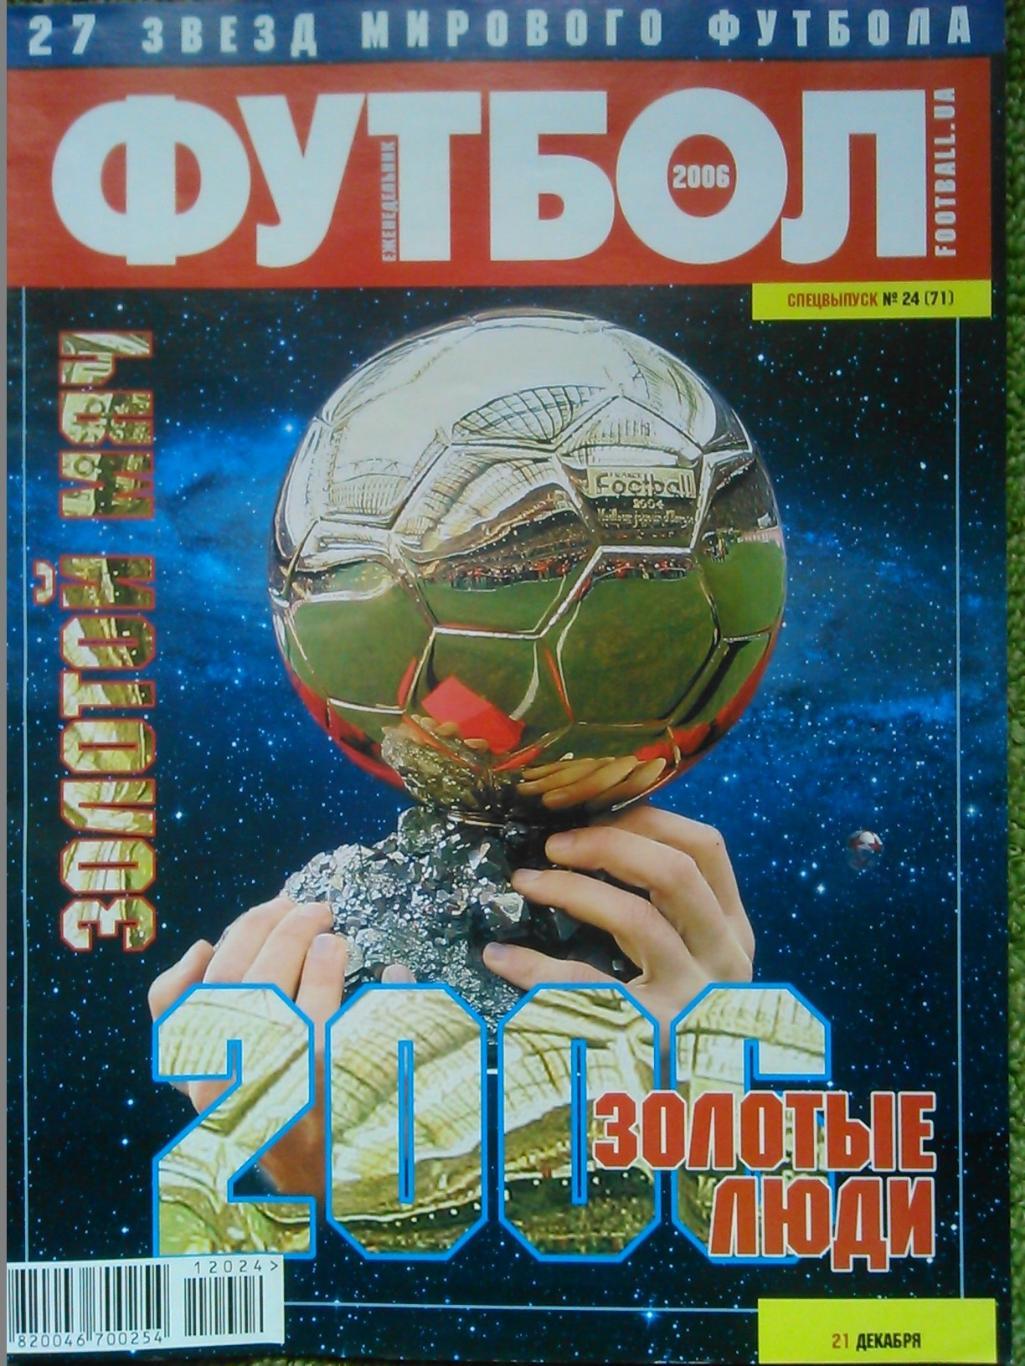 ФУТБОЛ (Укр.)2006.СПЕЦВЫПУСК №24(71). ЗОЛОТОЙ МЯЧ. Постер-Календарь-2007.